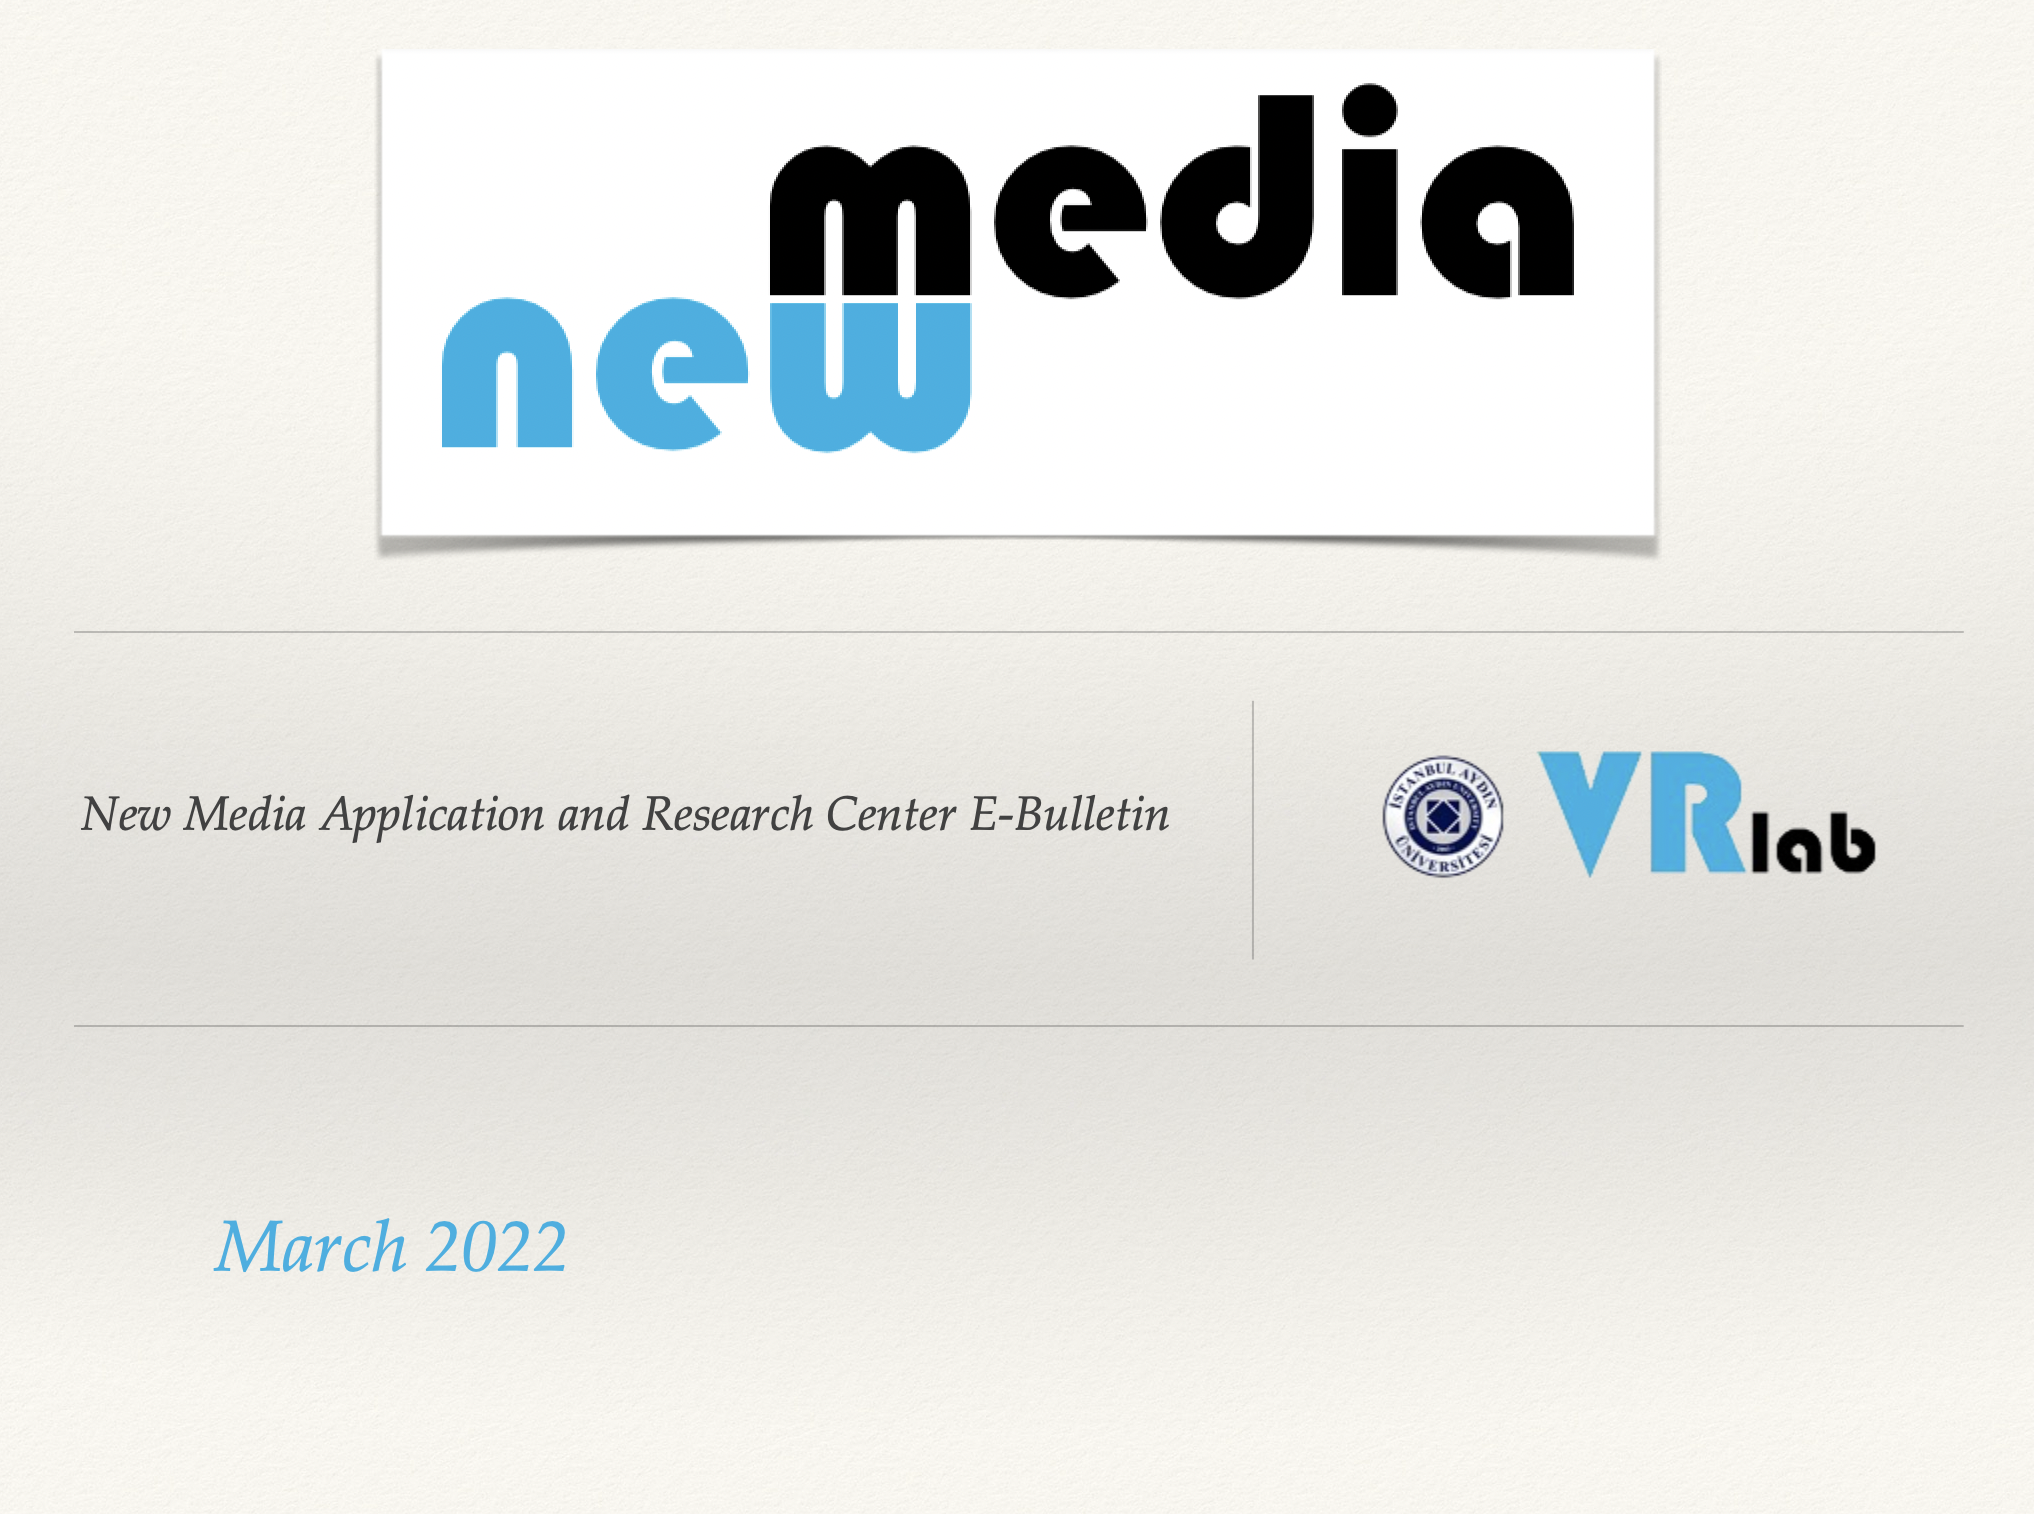 Yeni Medya Uygulama ve Araştırma Merkezi Mart 2022 E-Bülteni yayınlandı.